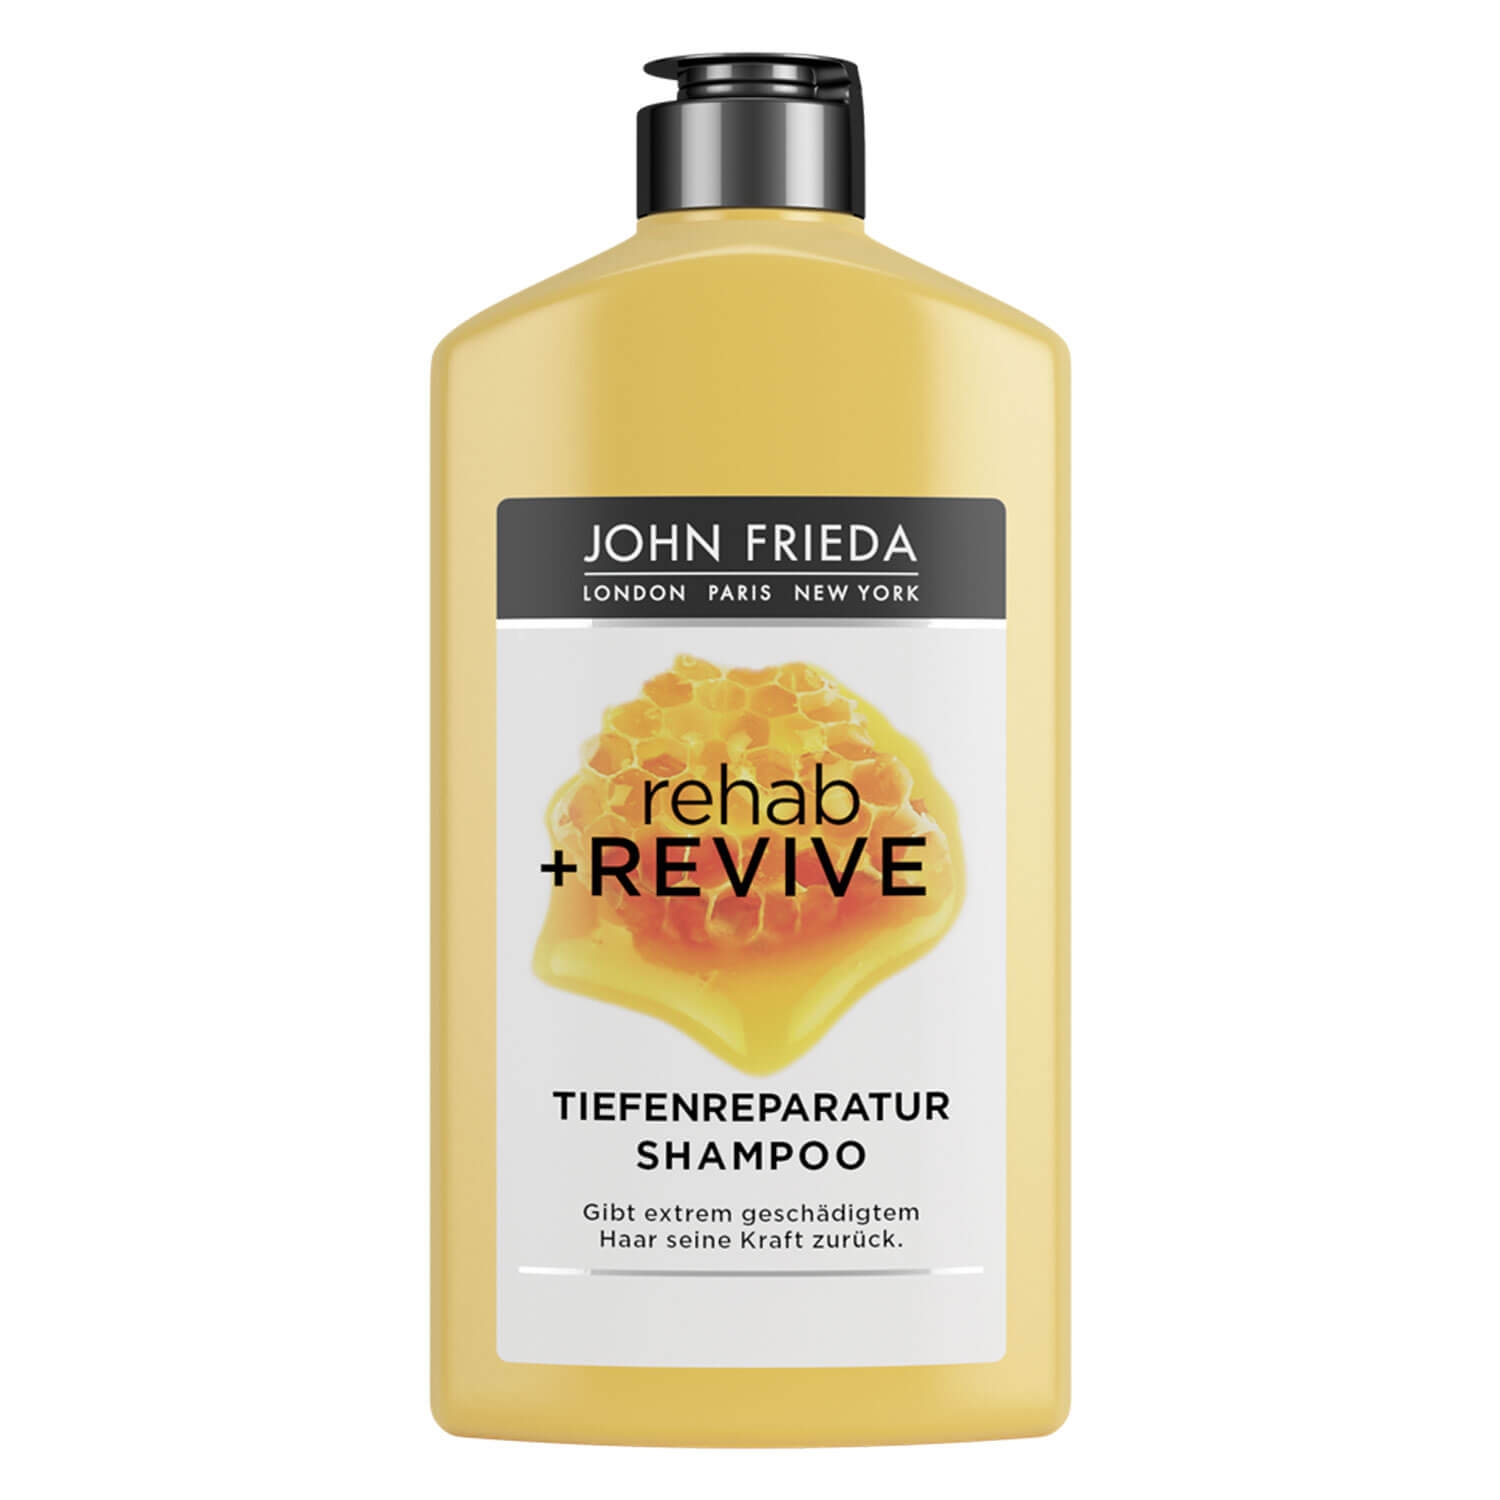 Produktbild von Rehab + Revive - Tiefenreparatur Shampoo